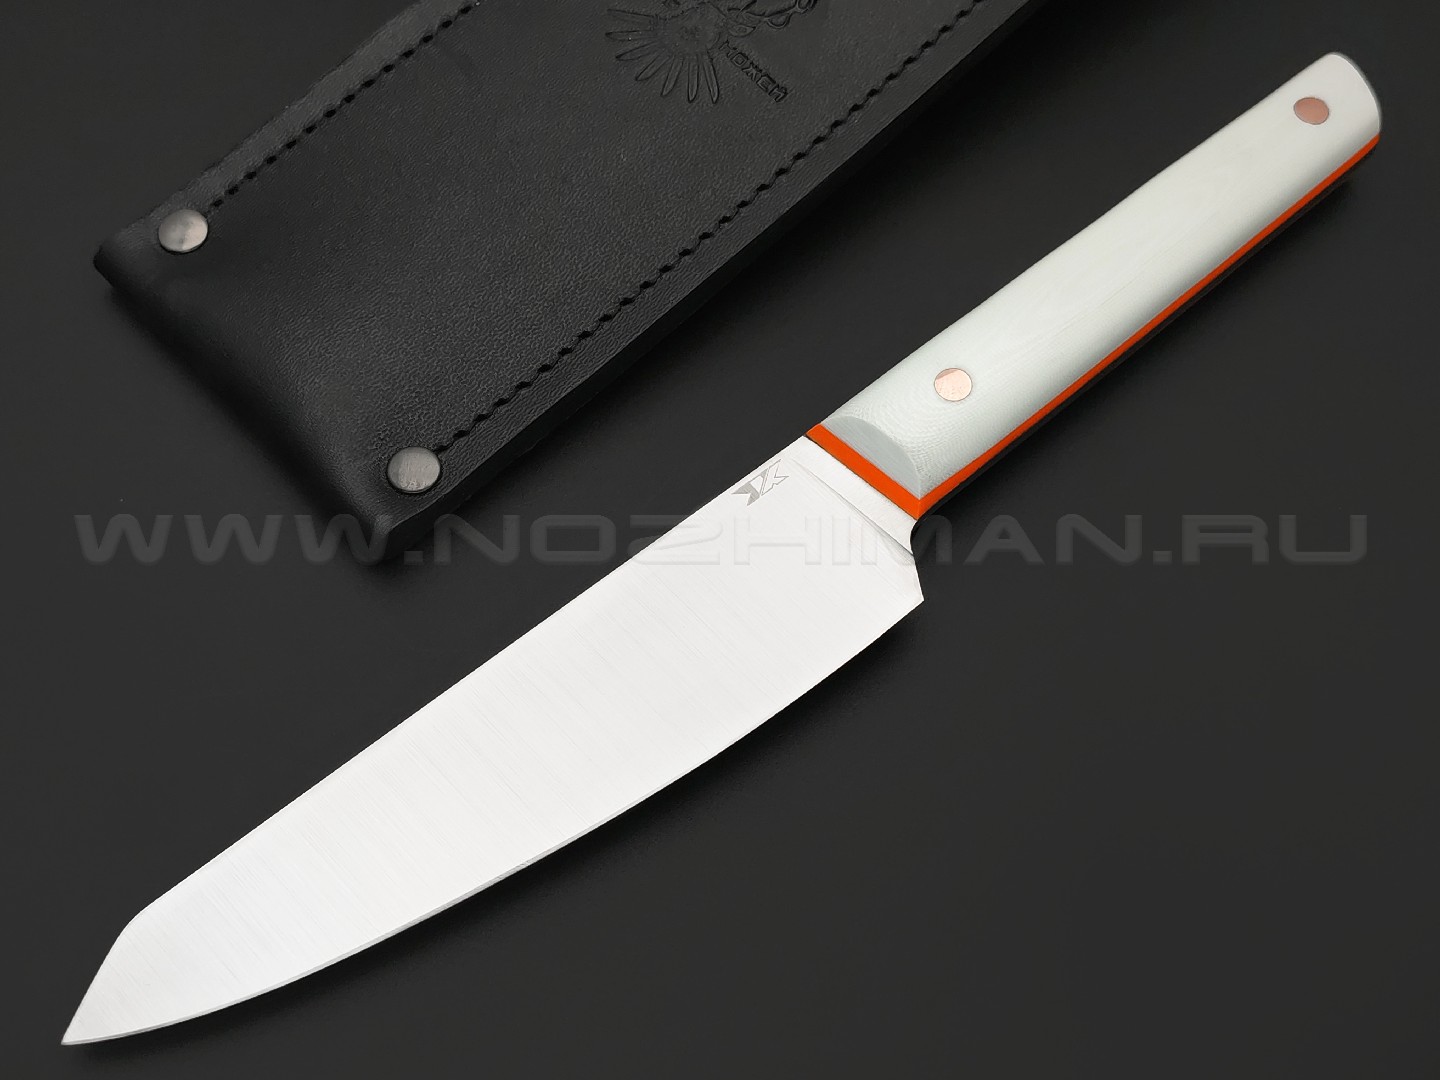 7 ножей нож Шеф сталь VG-10 satin, рукоять G10 white & orange